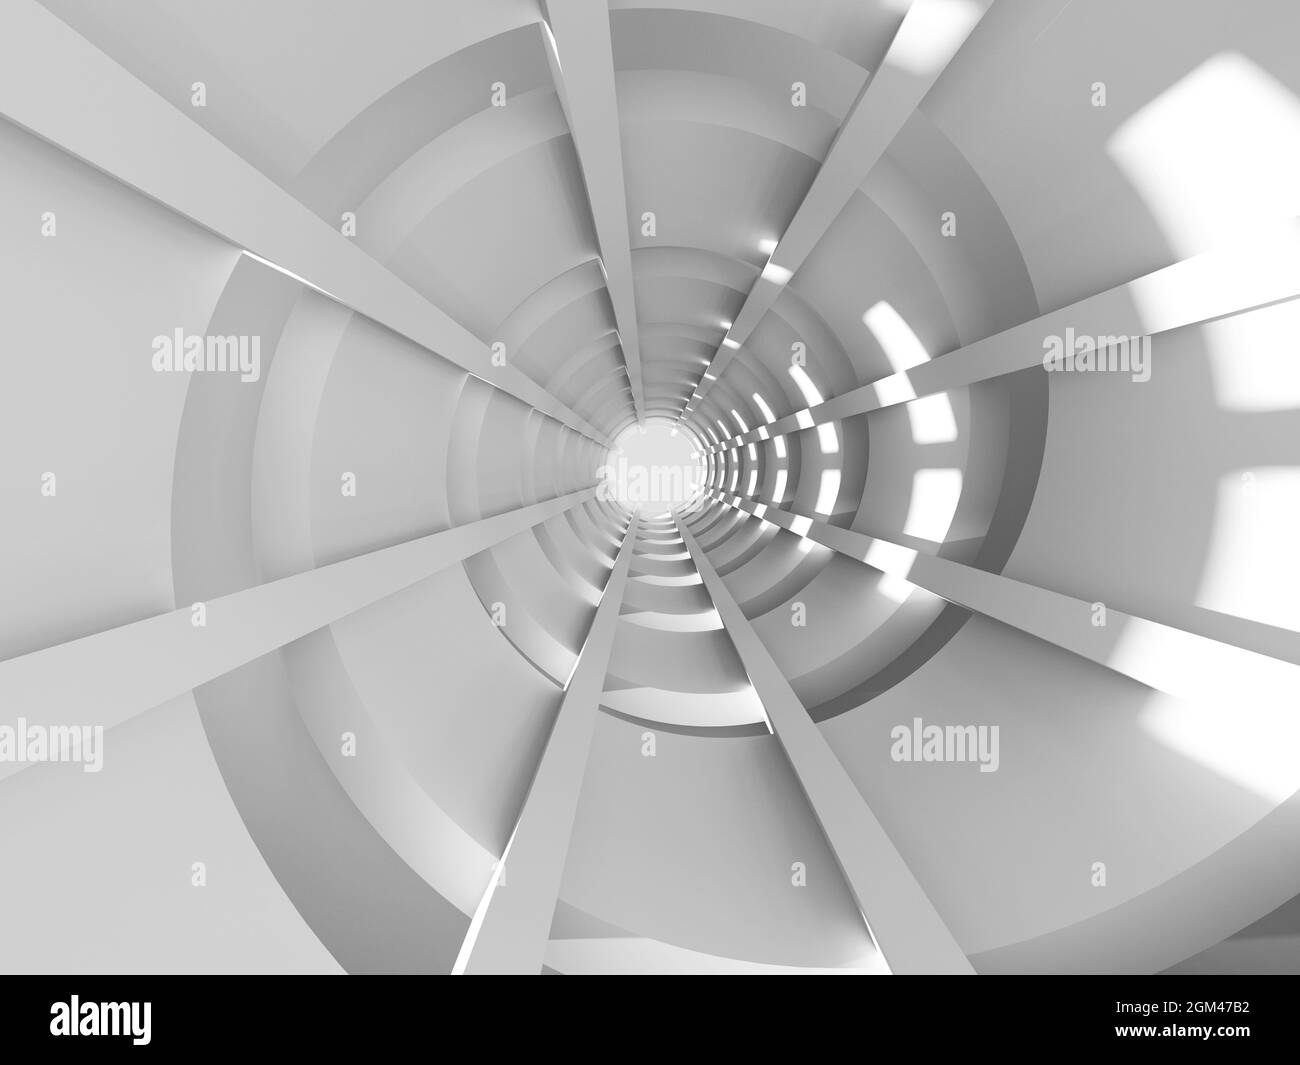 Garage spiral Schwarzweiß-Stockfotos und -bilder - Alamy